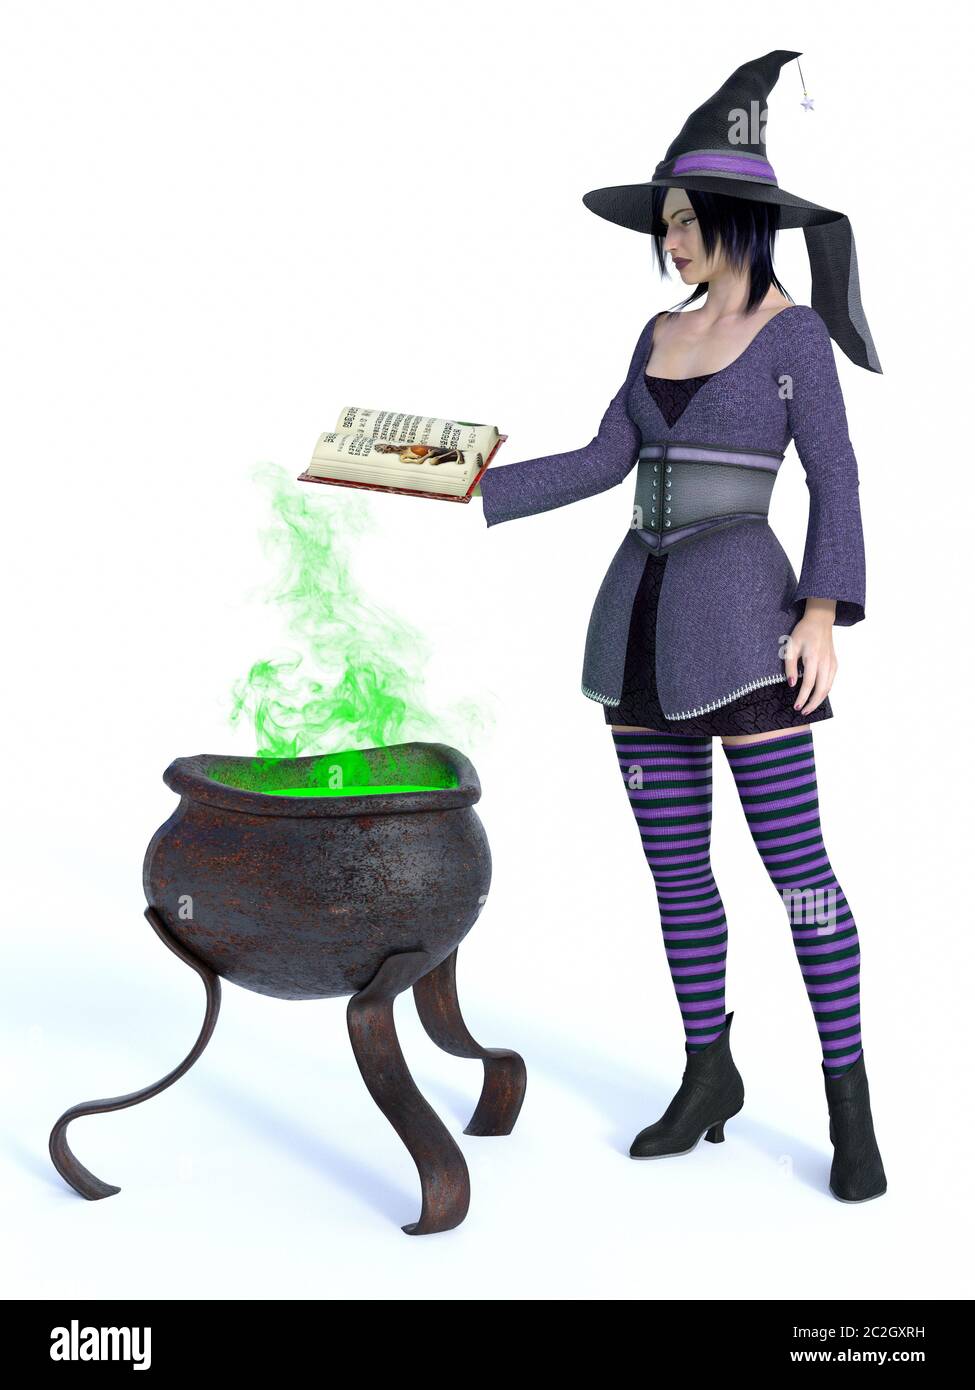 3D-Rendering für eine niedliche Pin-up-styled Hexe in lila Kleidung Holding ein Zauberbuch gekleidet. Ein großer Kessel mit grünem Rauch ist neben ihr. Weiß backgr Stockfoto